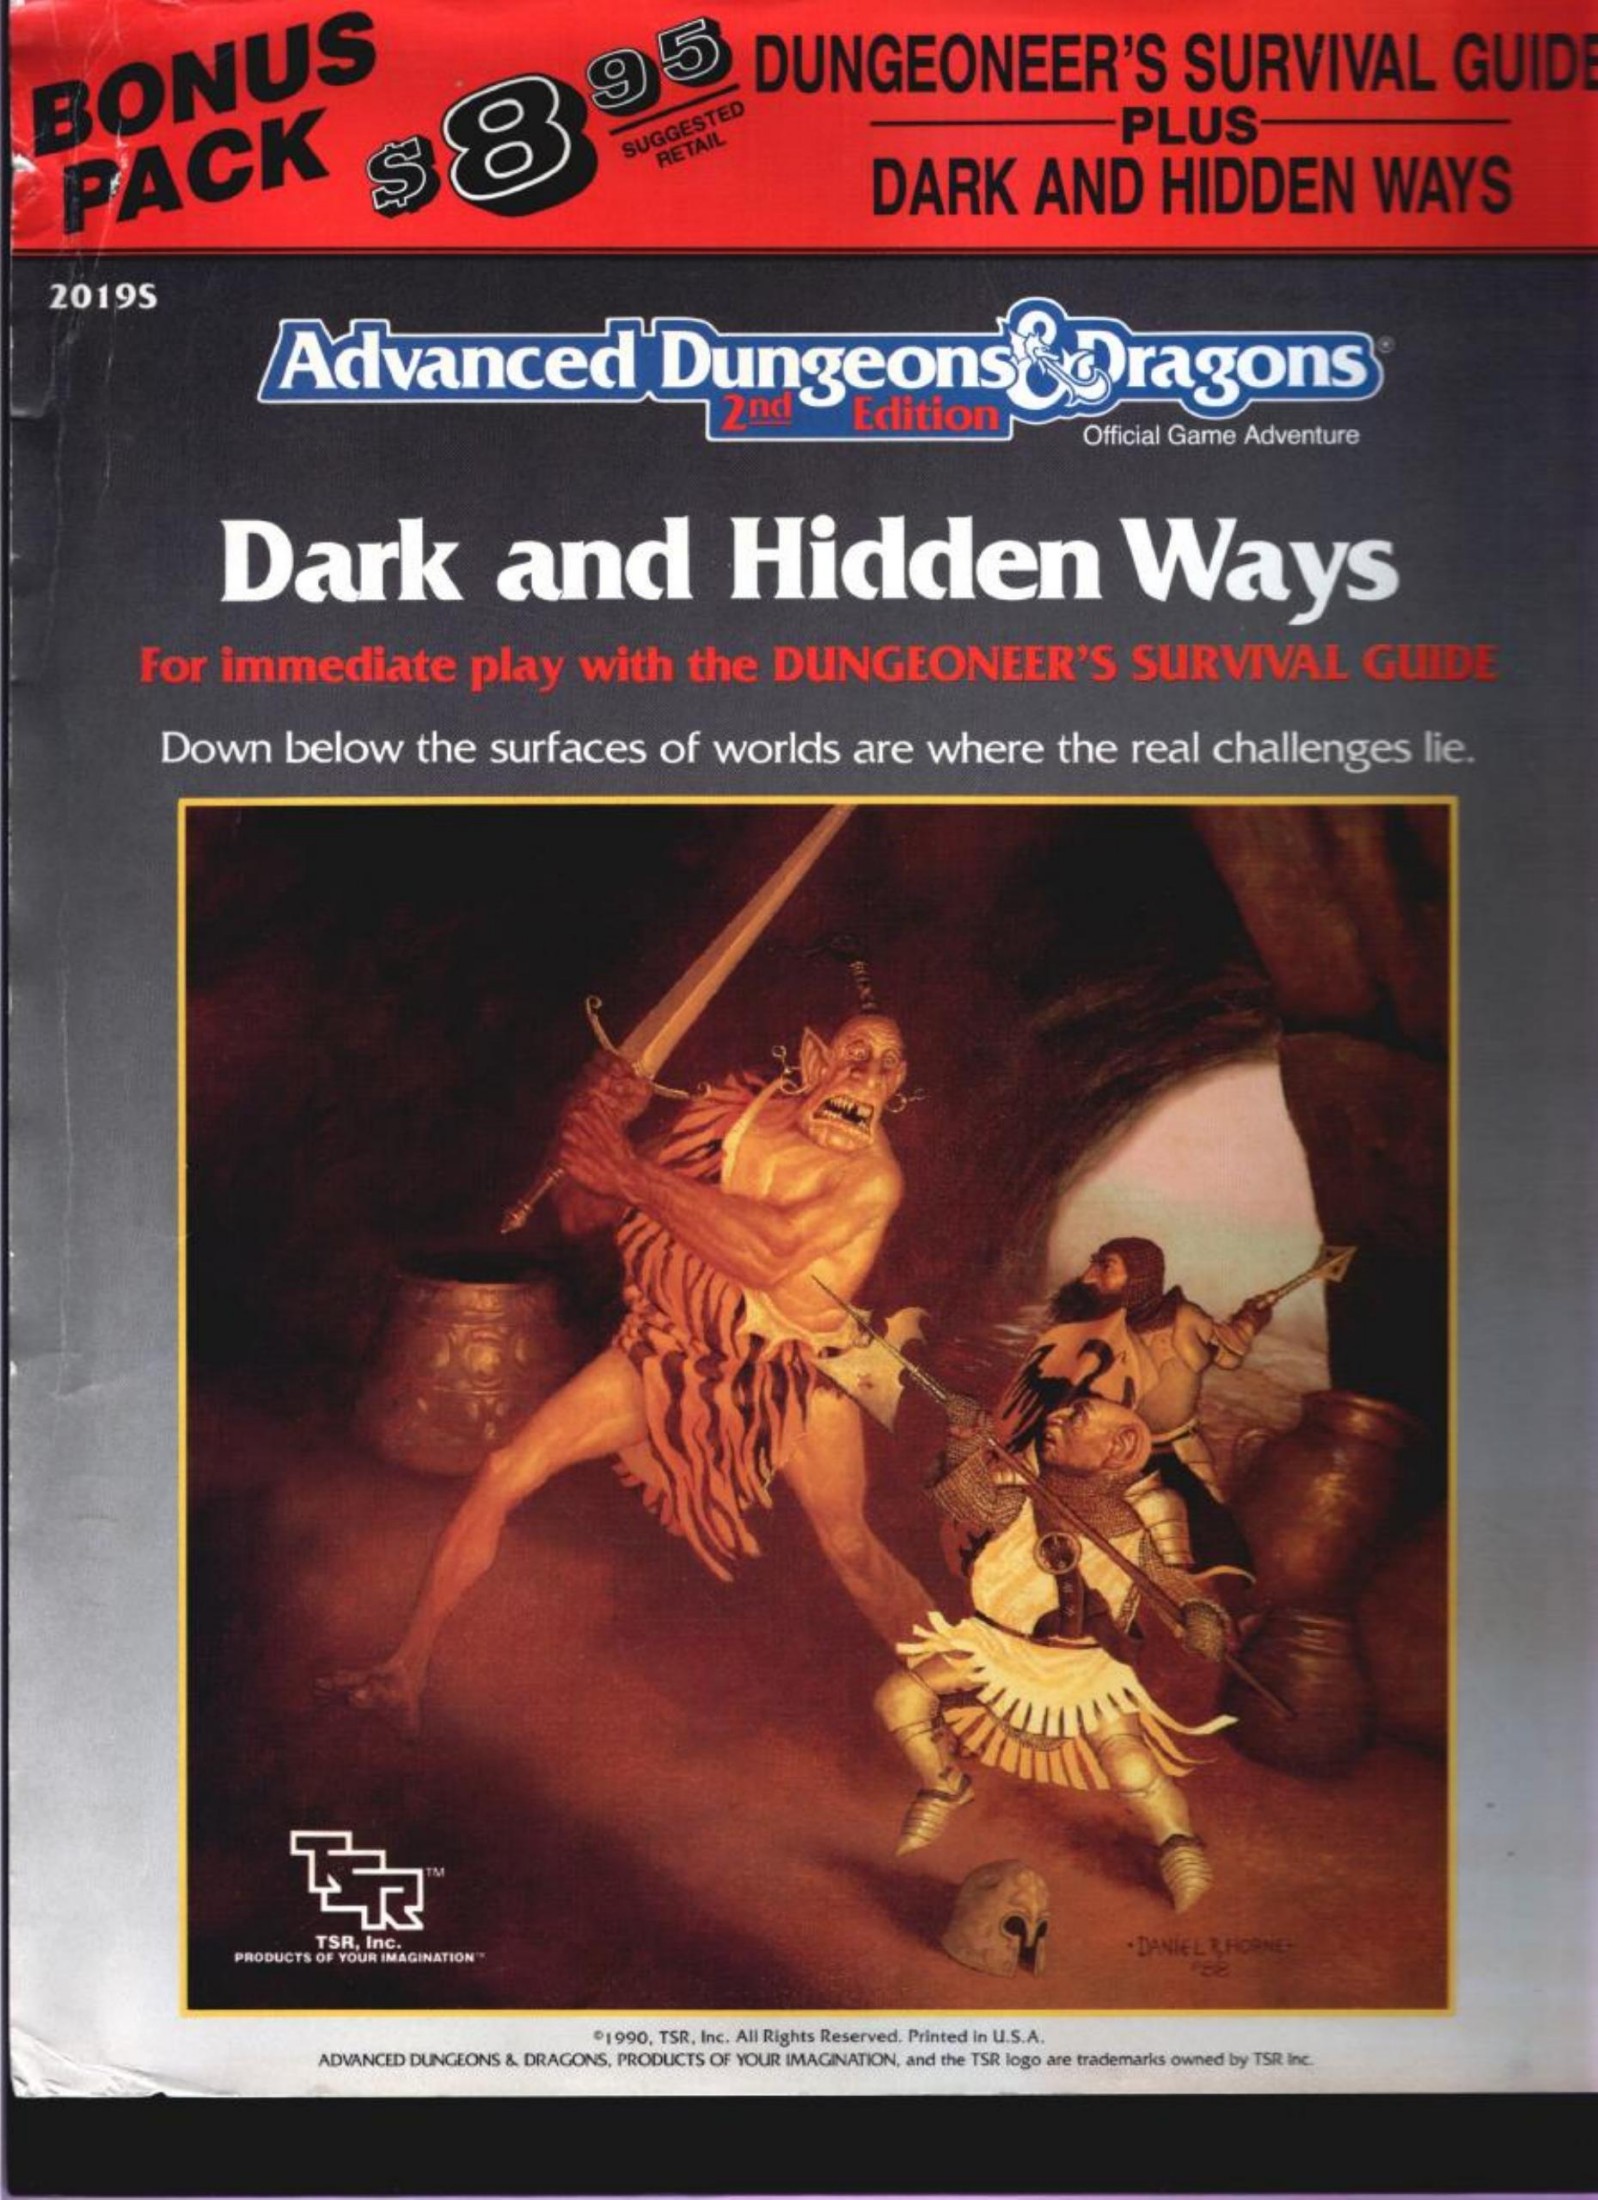 Dungeoneers Survival Guide Dark and Hidden Ways set